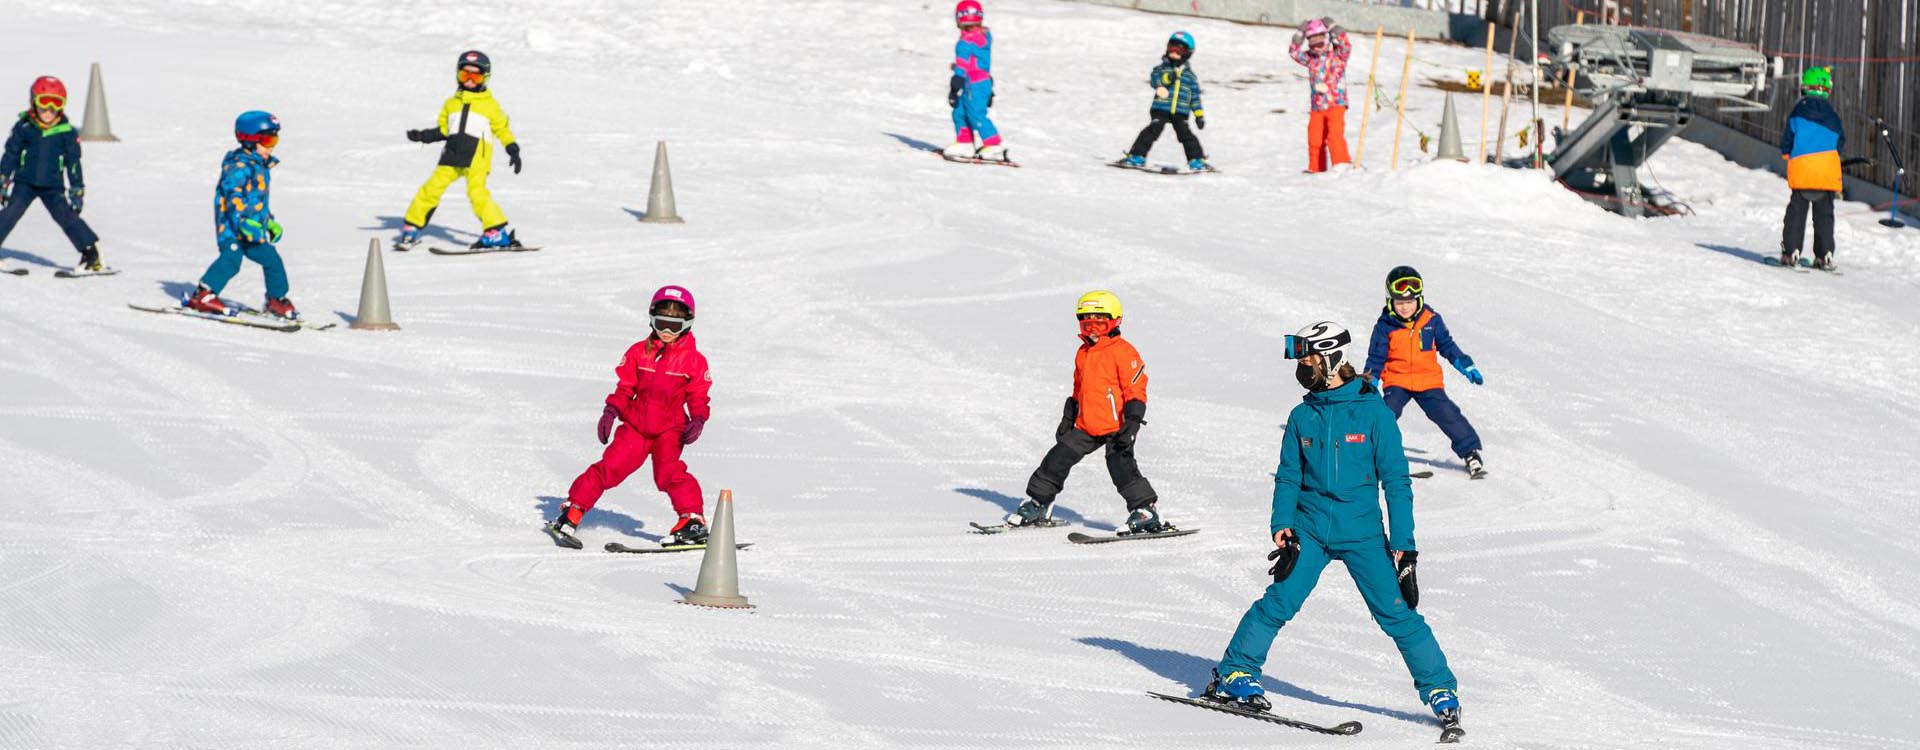 Skischool, Flims, Laax, Schweiz, Schneewunderland, Skischule, Kids, Unterricht, Skigebiet